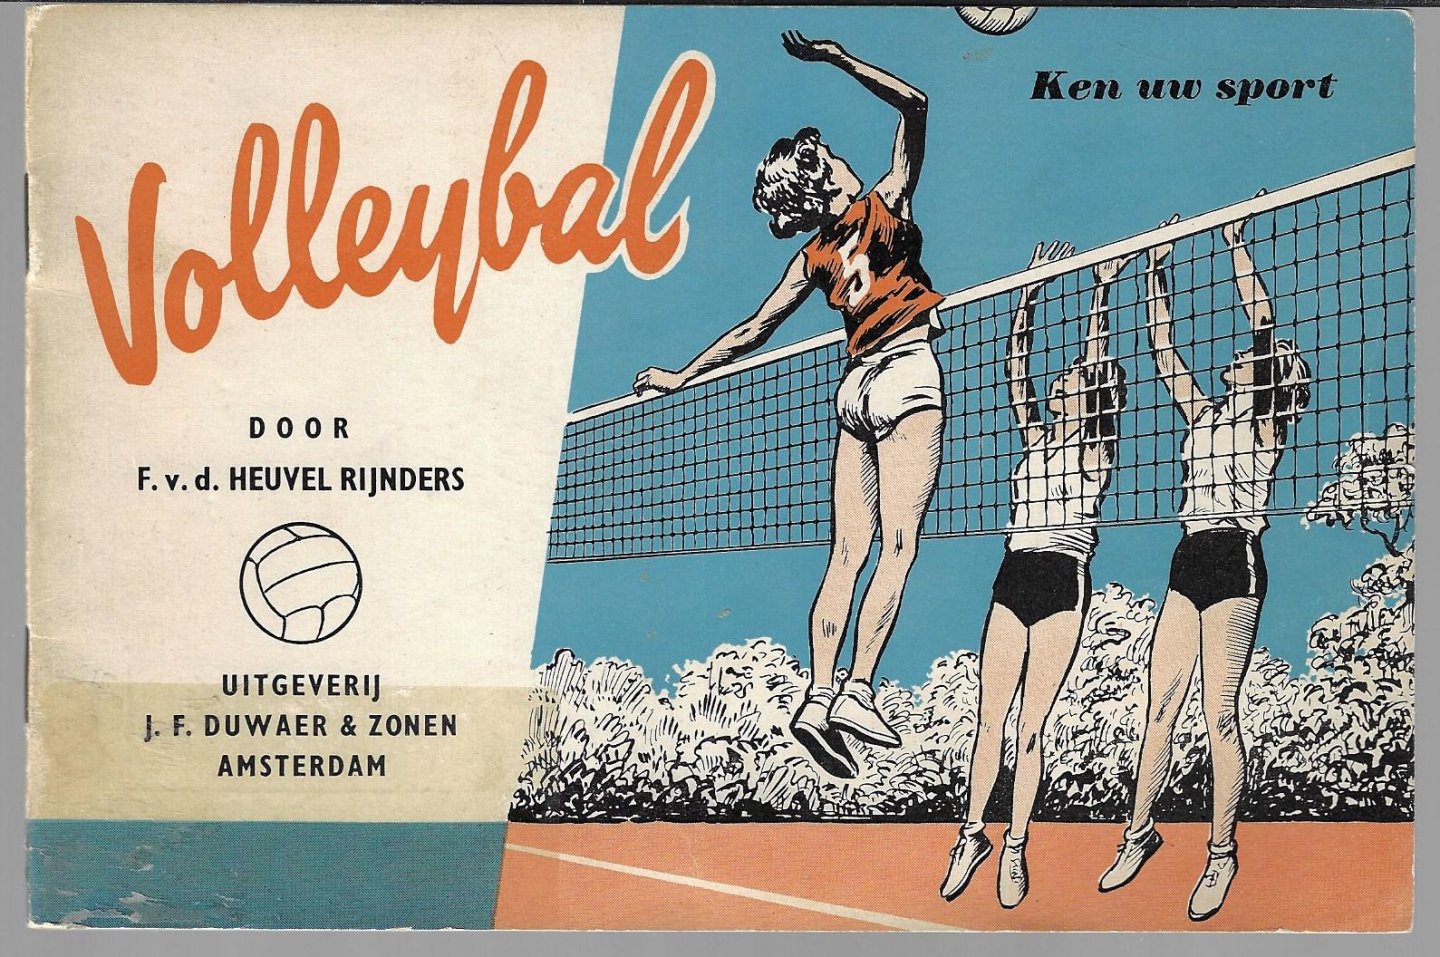 Heuvel Rijnders, F.v.d. - Ken uw sport - Volleybal